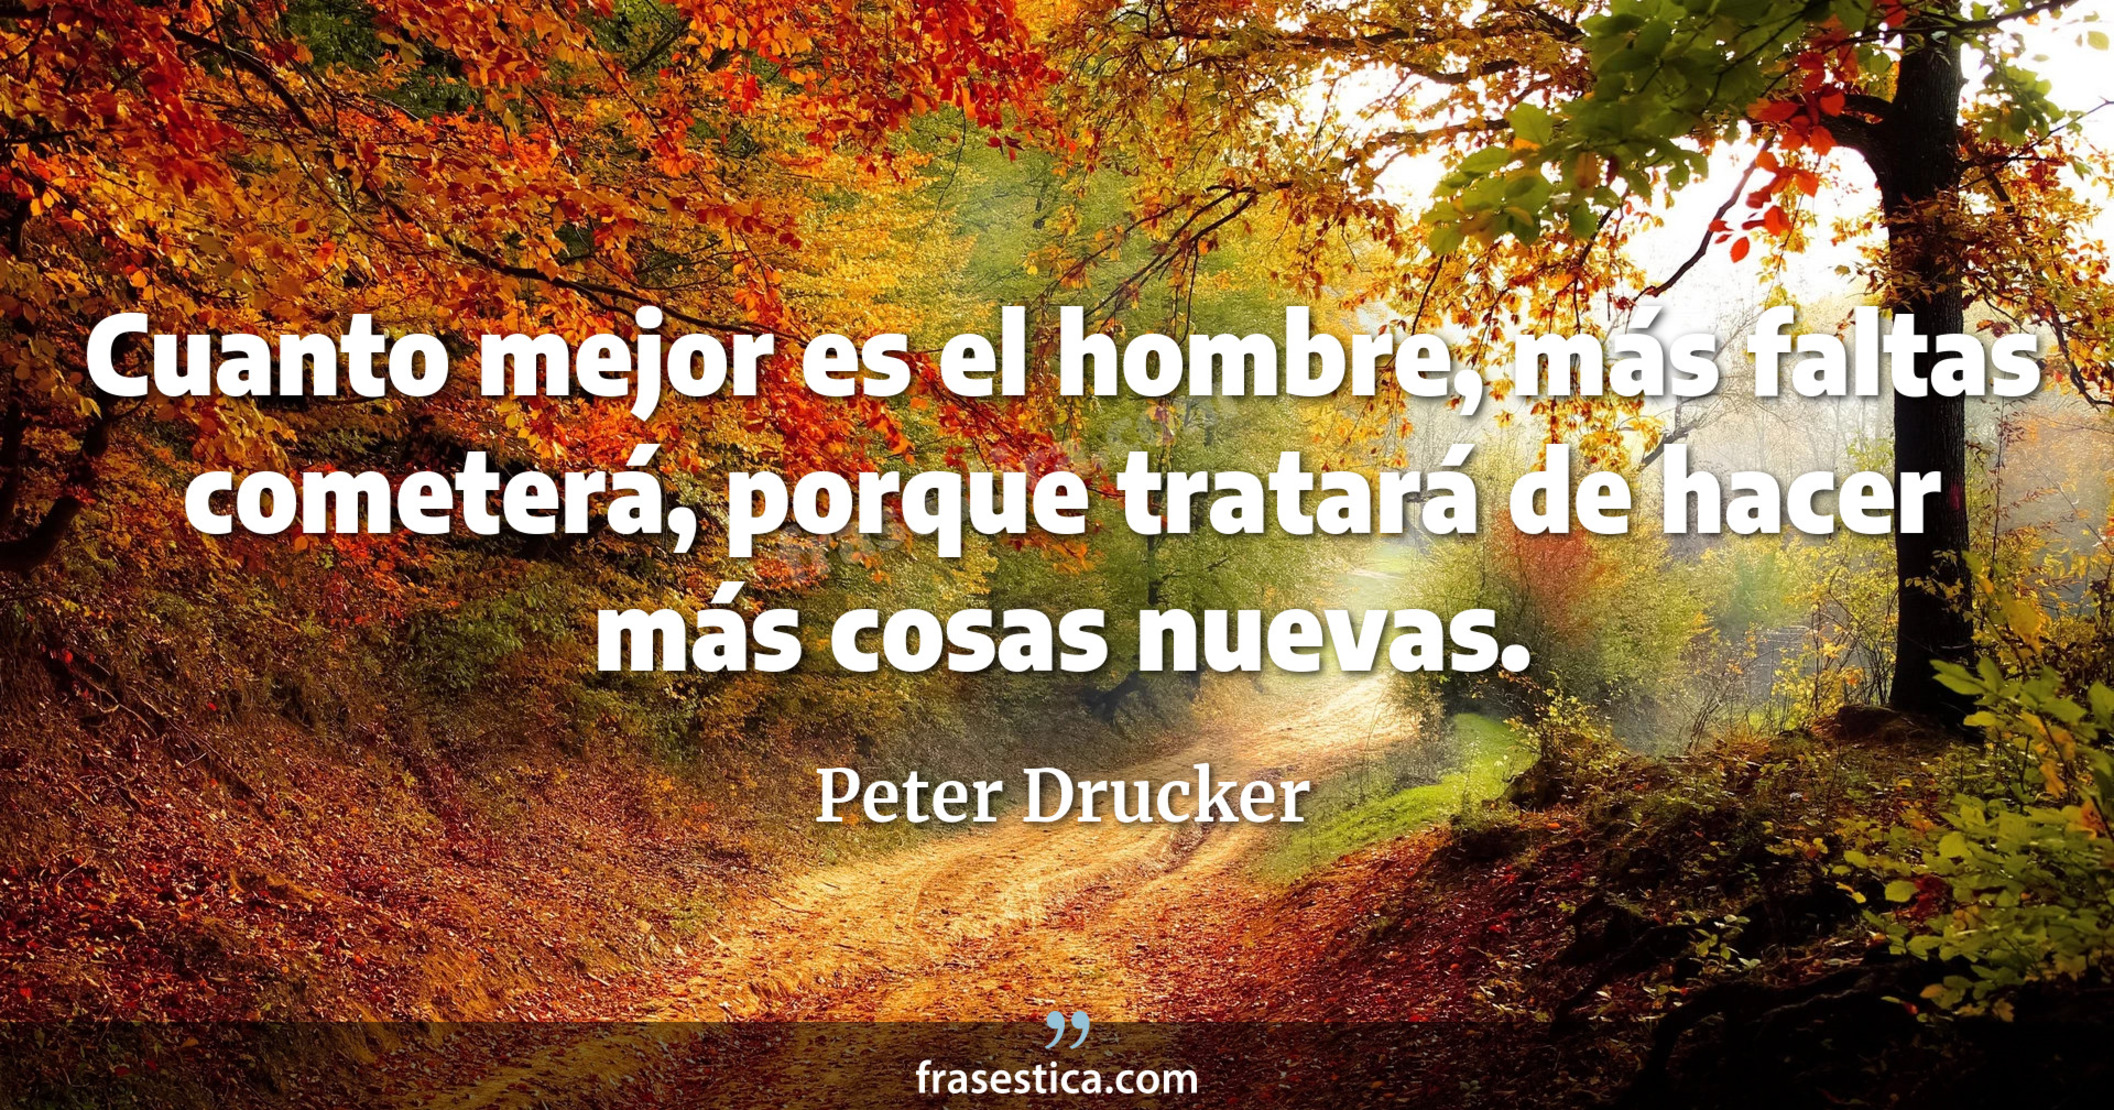 Cuanto mejor es el hombre, más faltas cometerá, porque tratará de hacer más cosas nuevas. - Peter Drucker